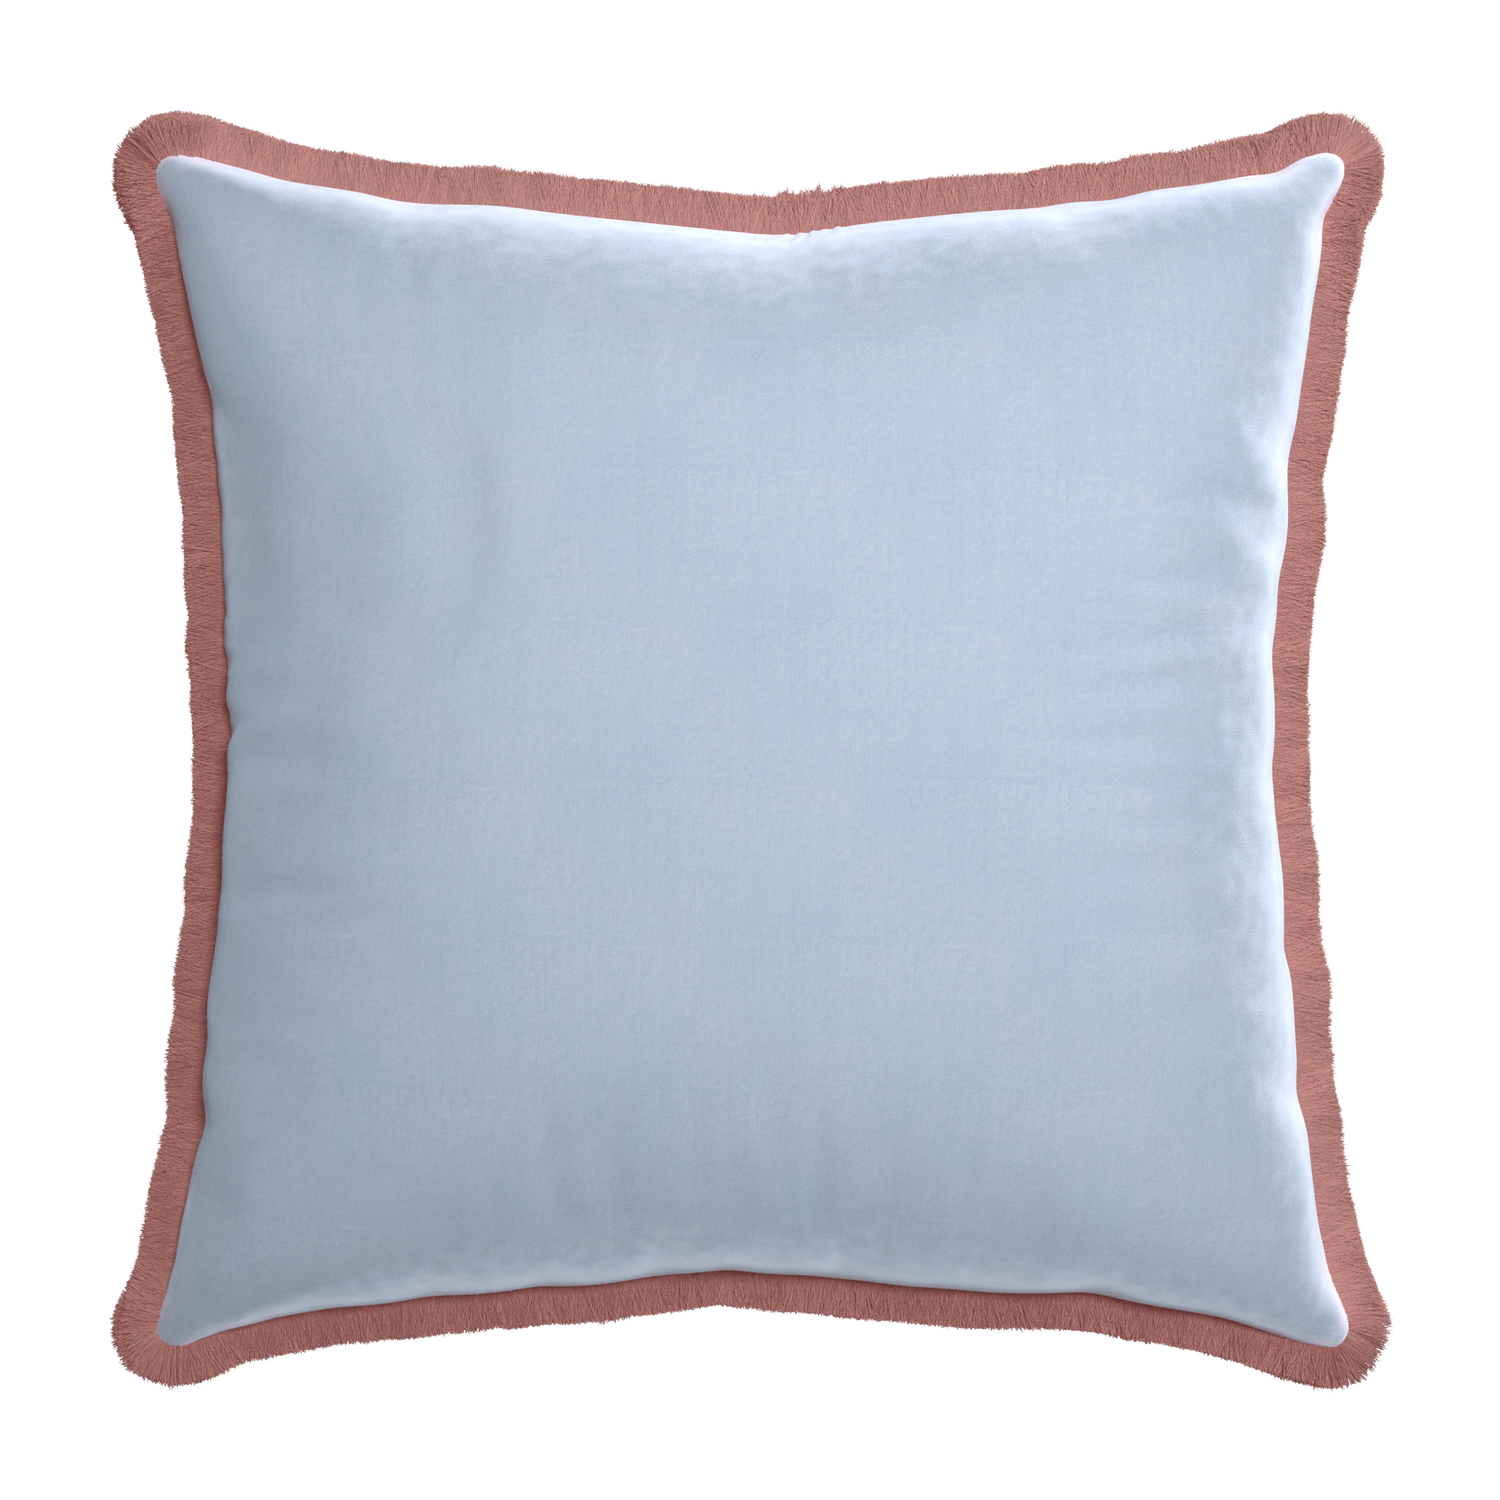 Euro-sham sky velvet custom pillow with d fringe on white background